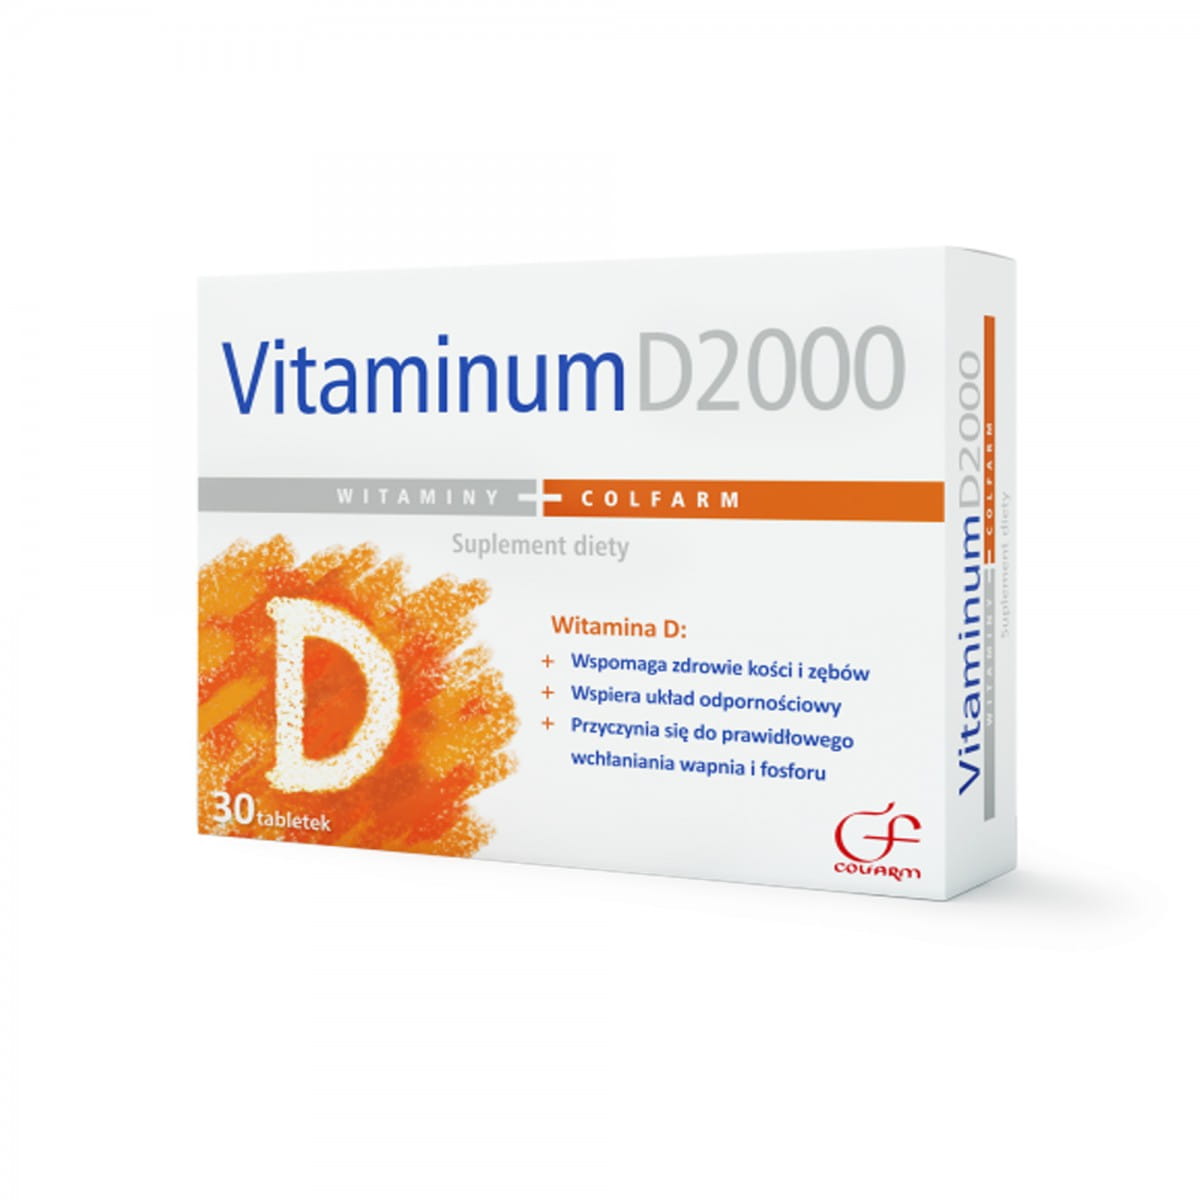 Vitaminum D2000 30 capsules COLFARM